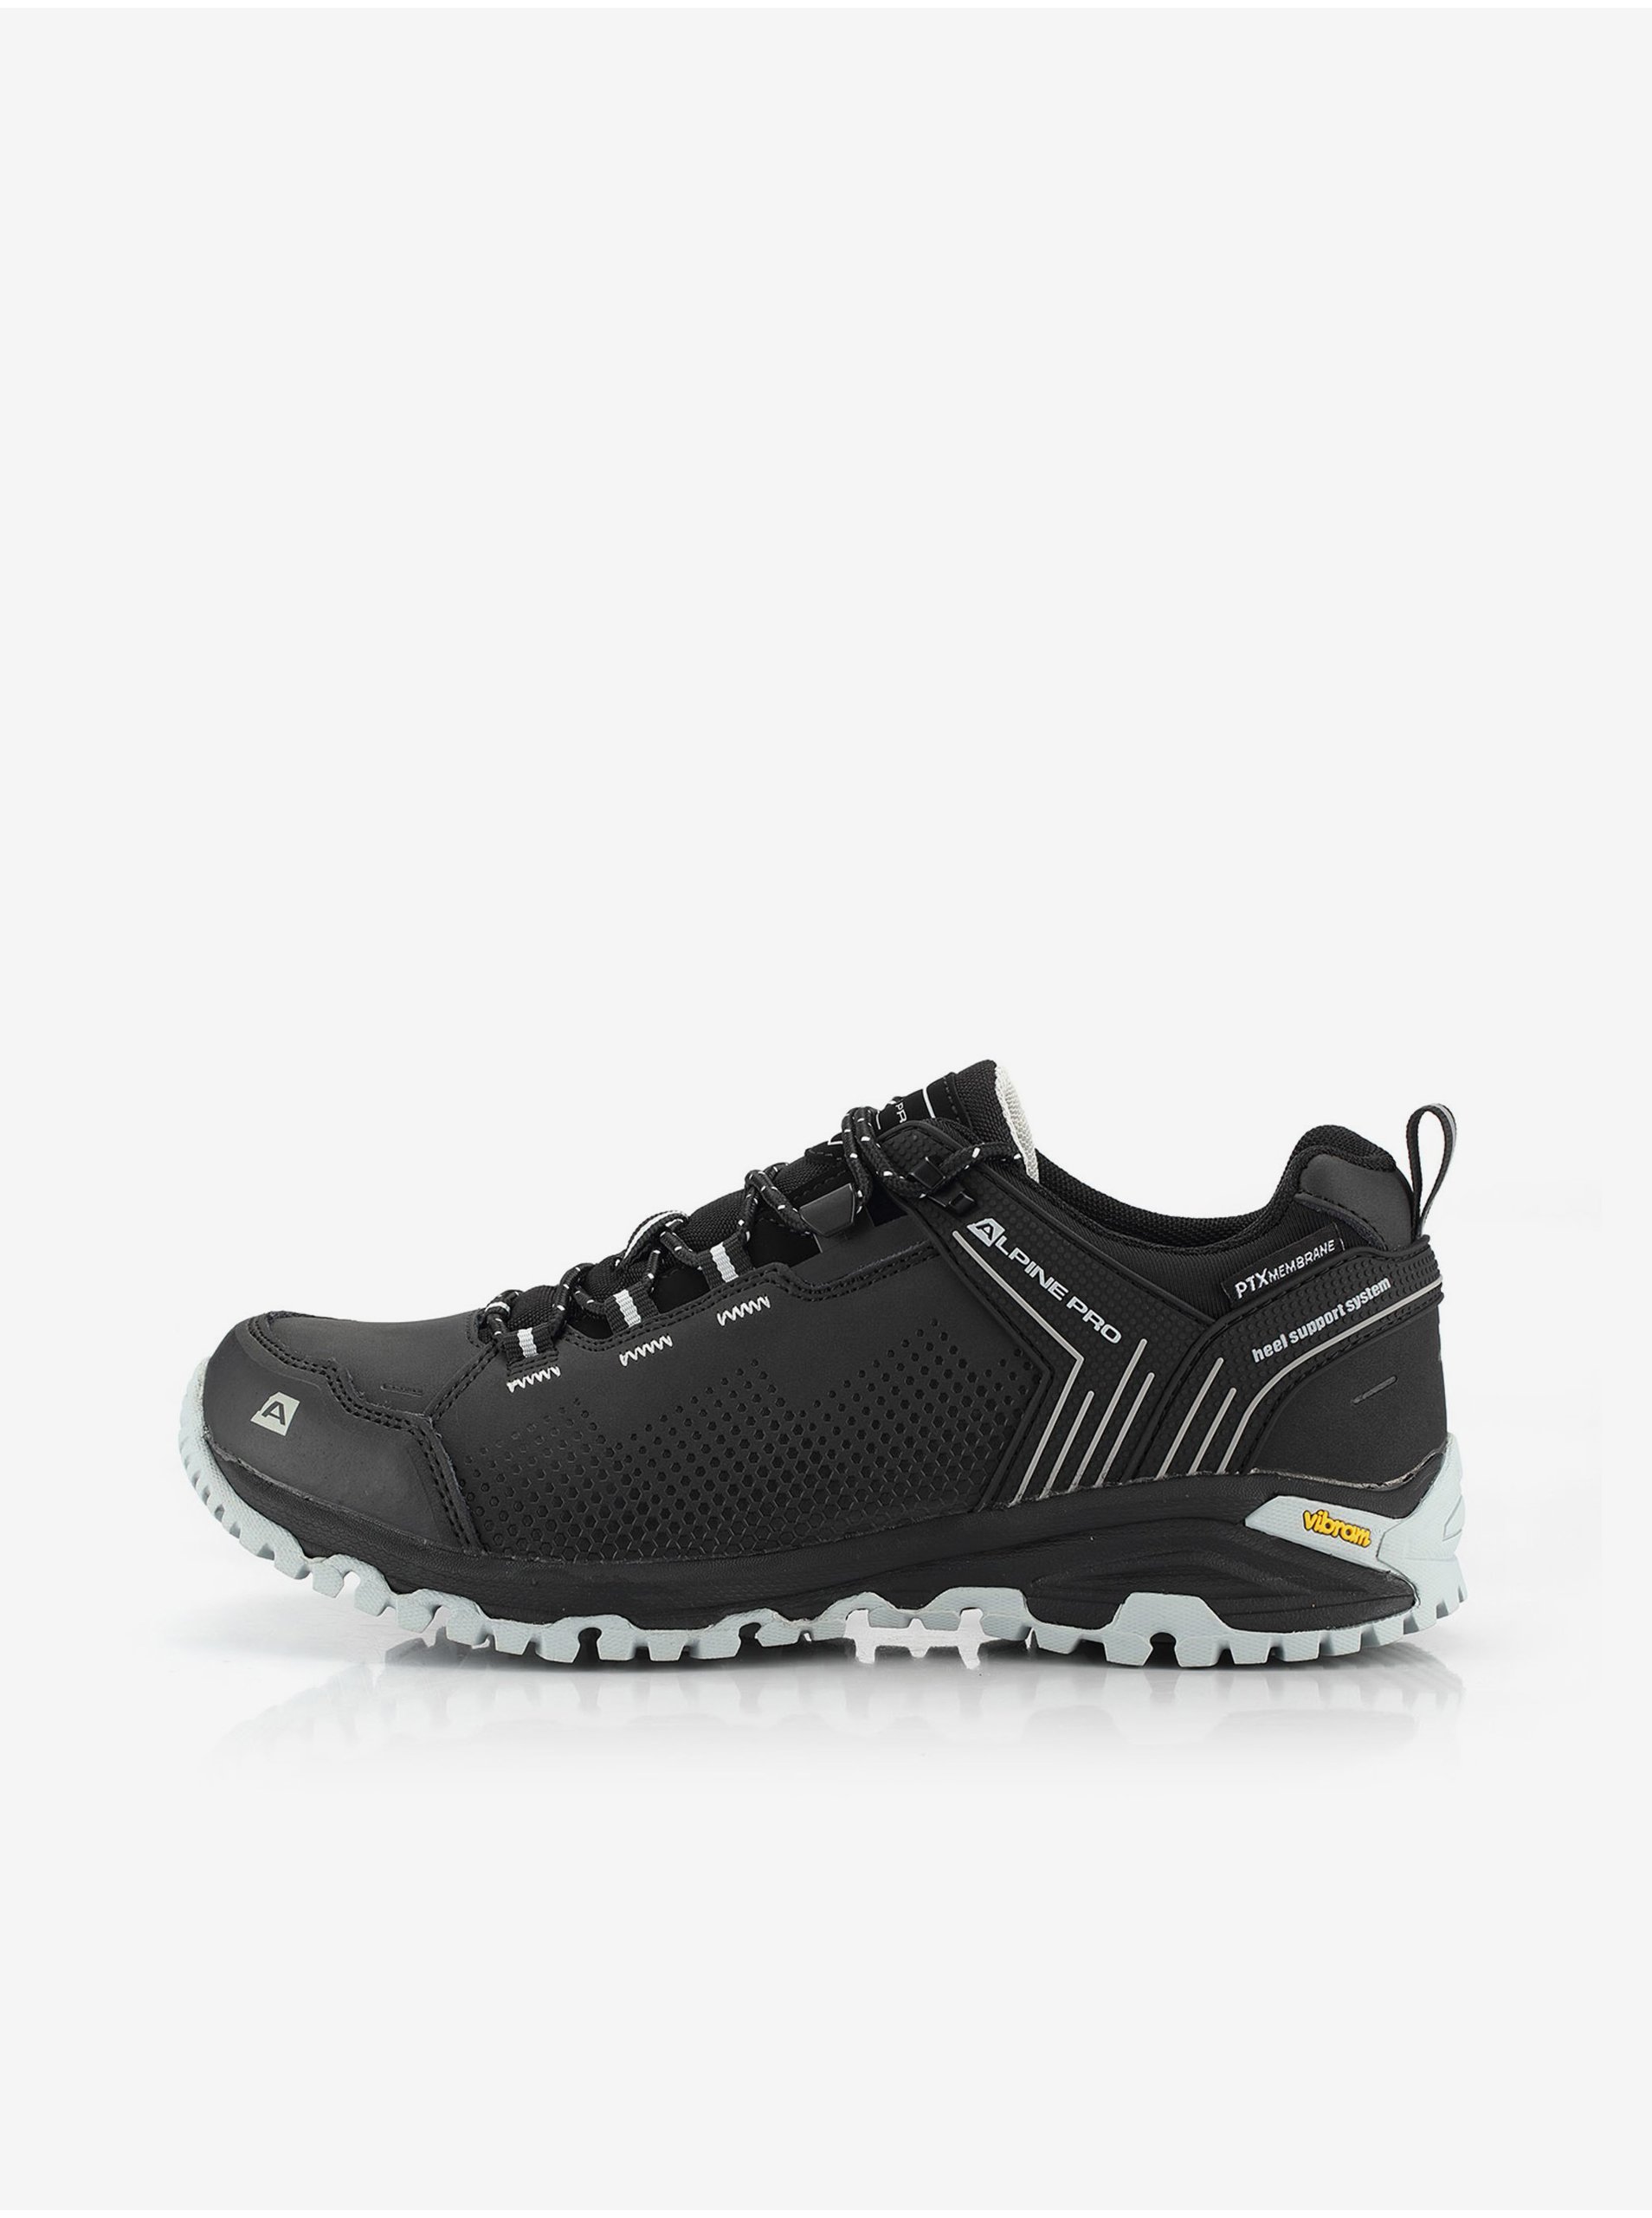 E-shop Outdoorová obuv s membránou ptx ALPINE PRO ZURREFE černá